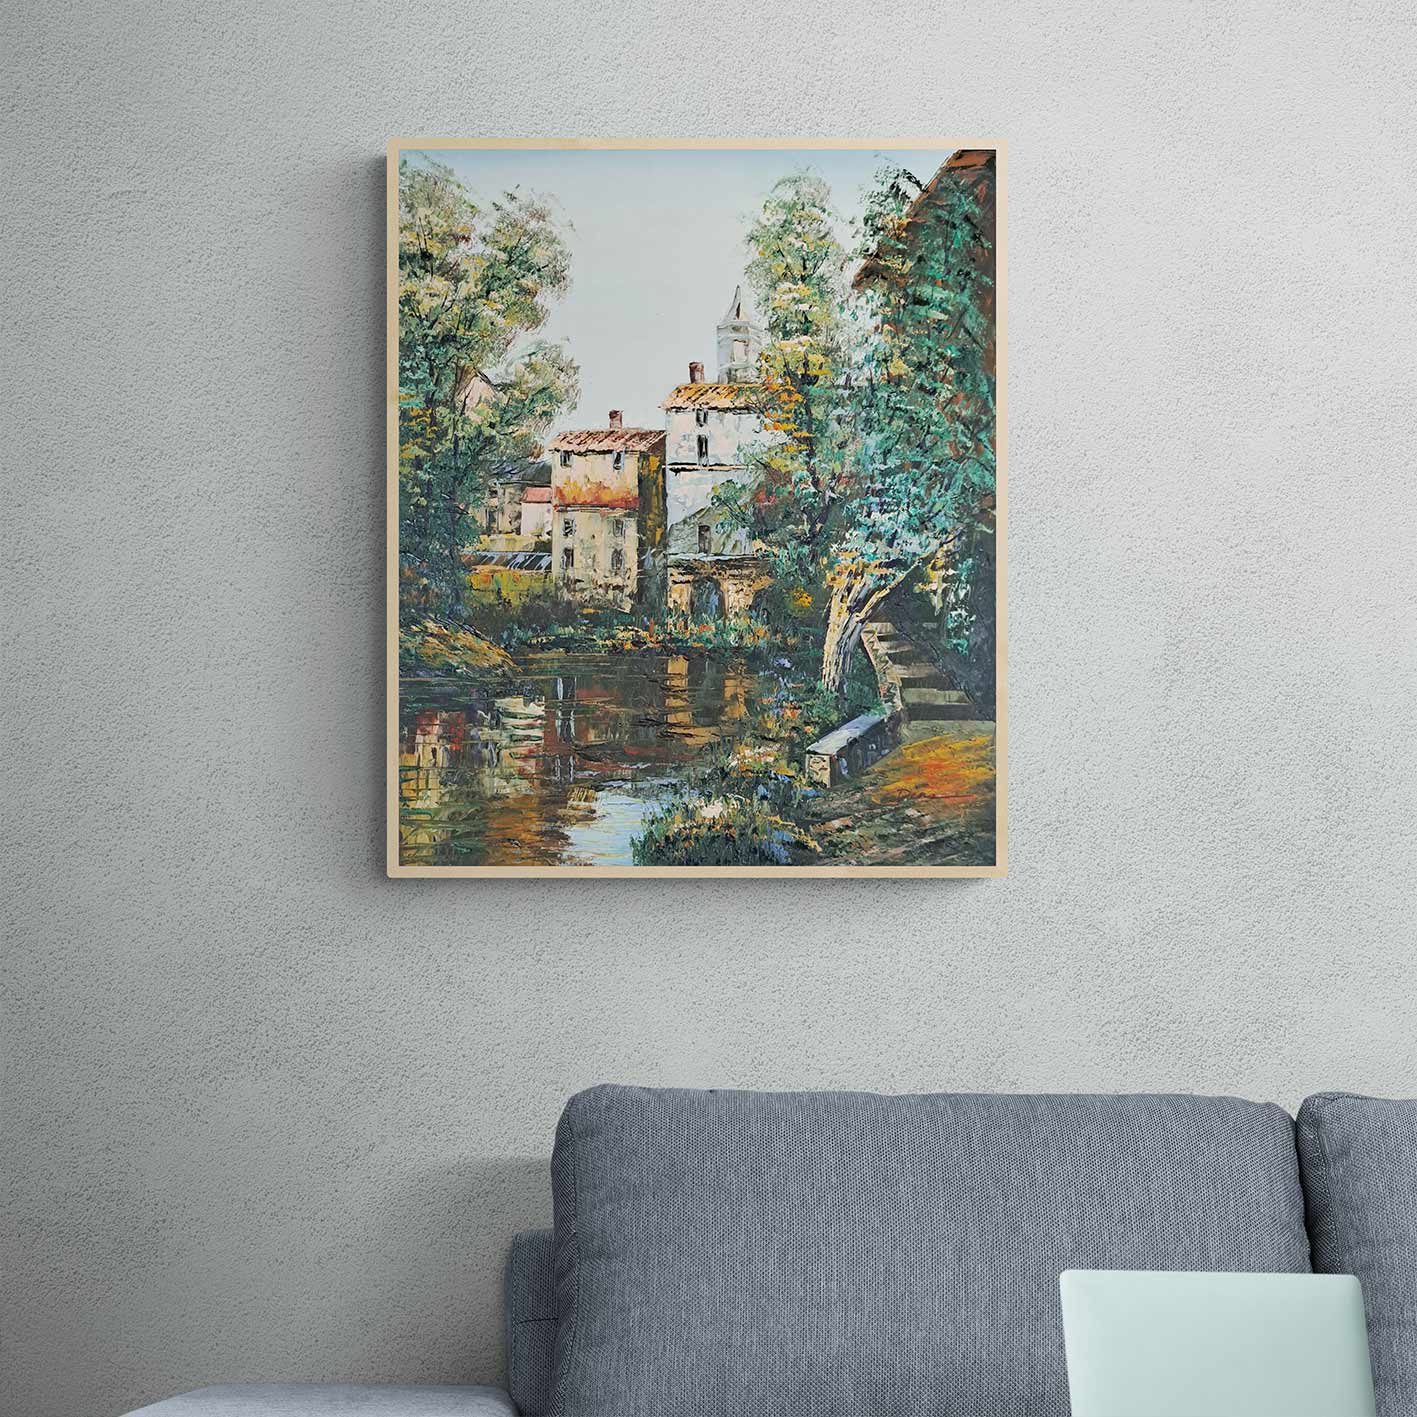 Naturdörfer-Gemälde 50x60 cm